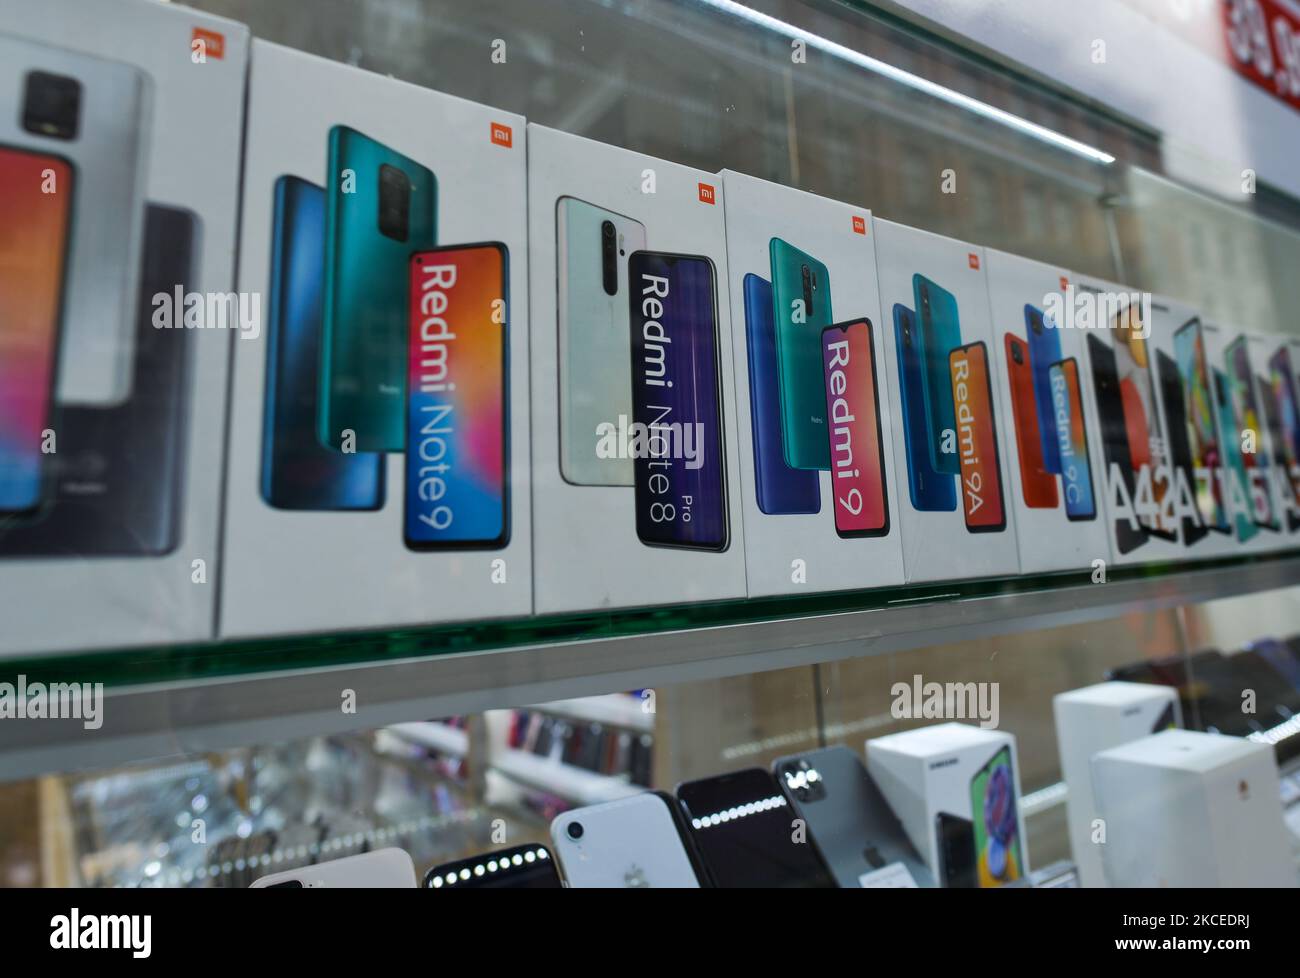 Acquista la vetrina con i prodotti Xiaomi, inclusi i più recenti telefoni Redmi Note. Irlanda, mercoledì 12 maggio 2021, a Dublino, Irlanda. (Foto di Artur Widak/NurPhoto) Foto Stock